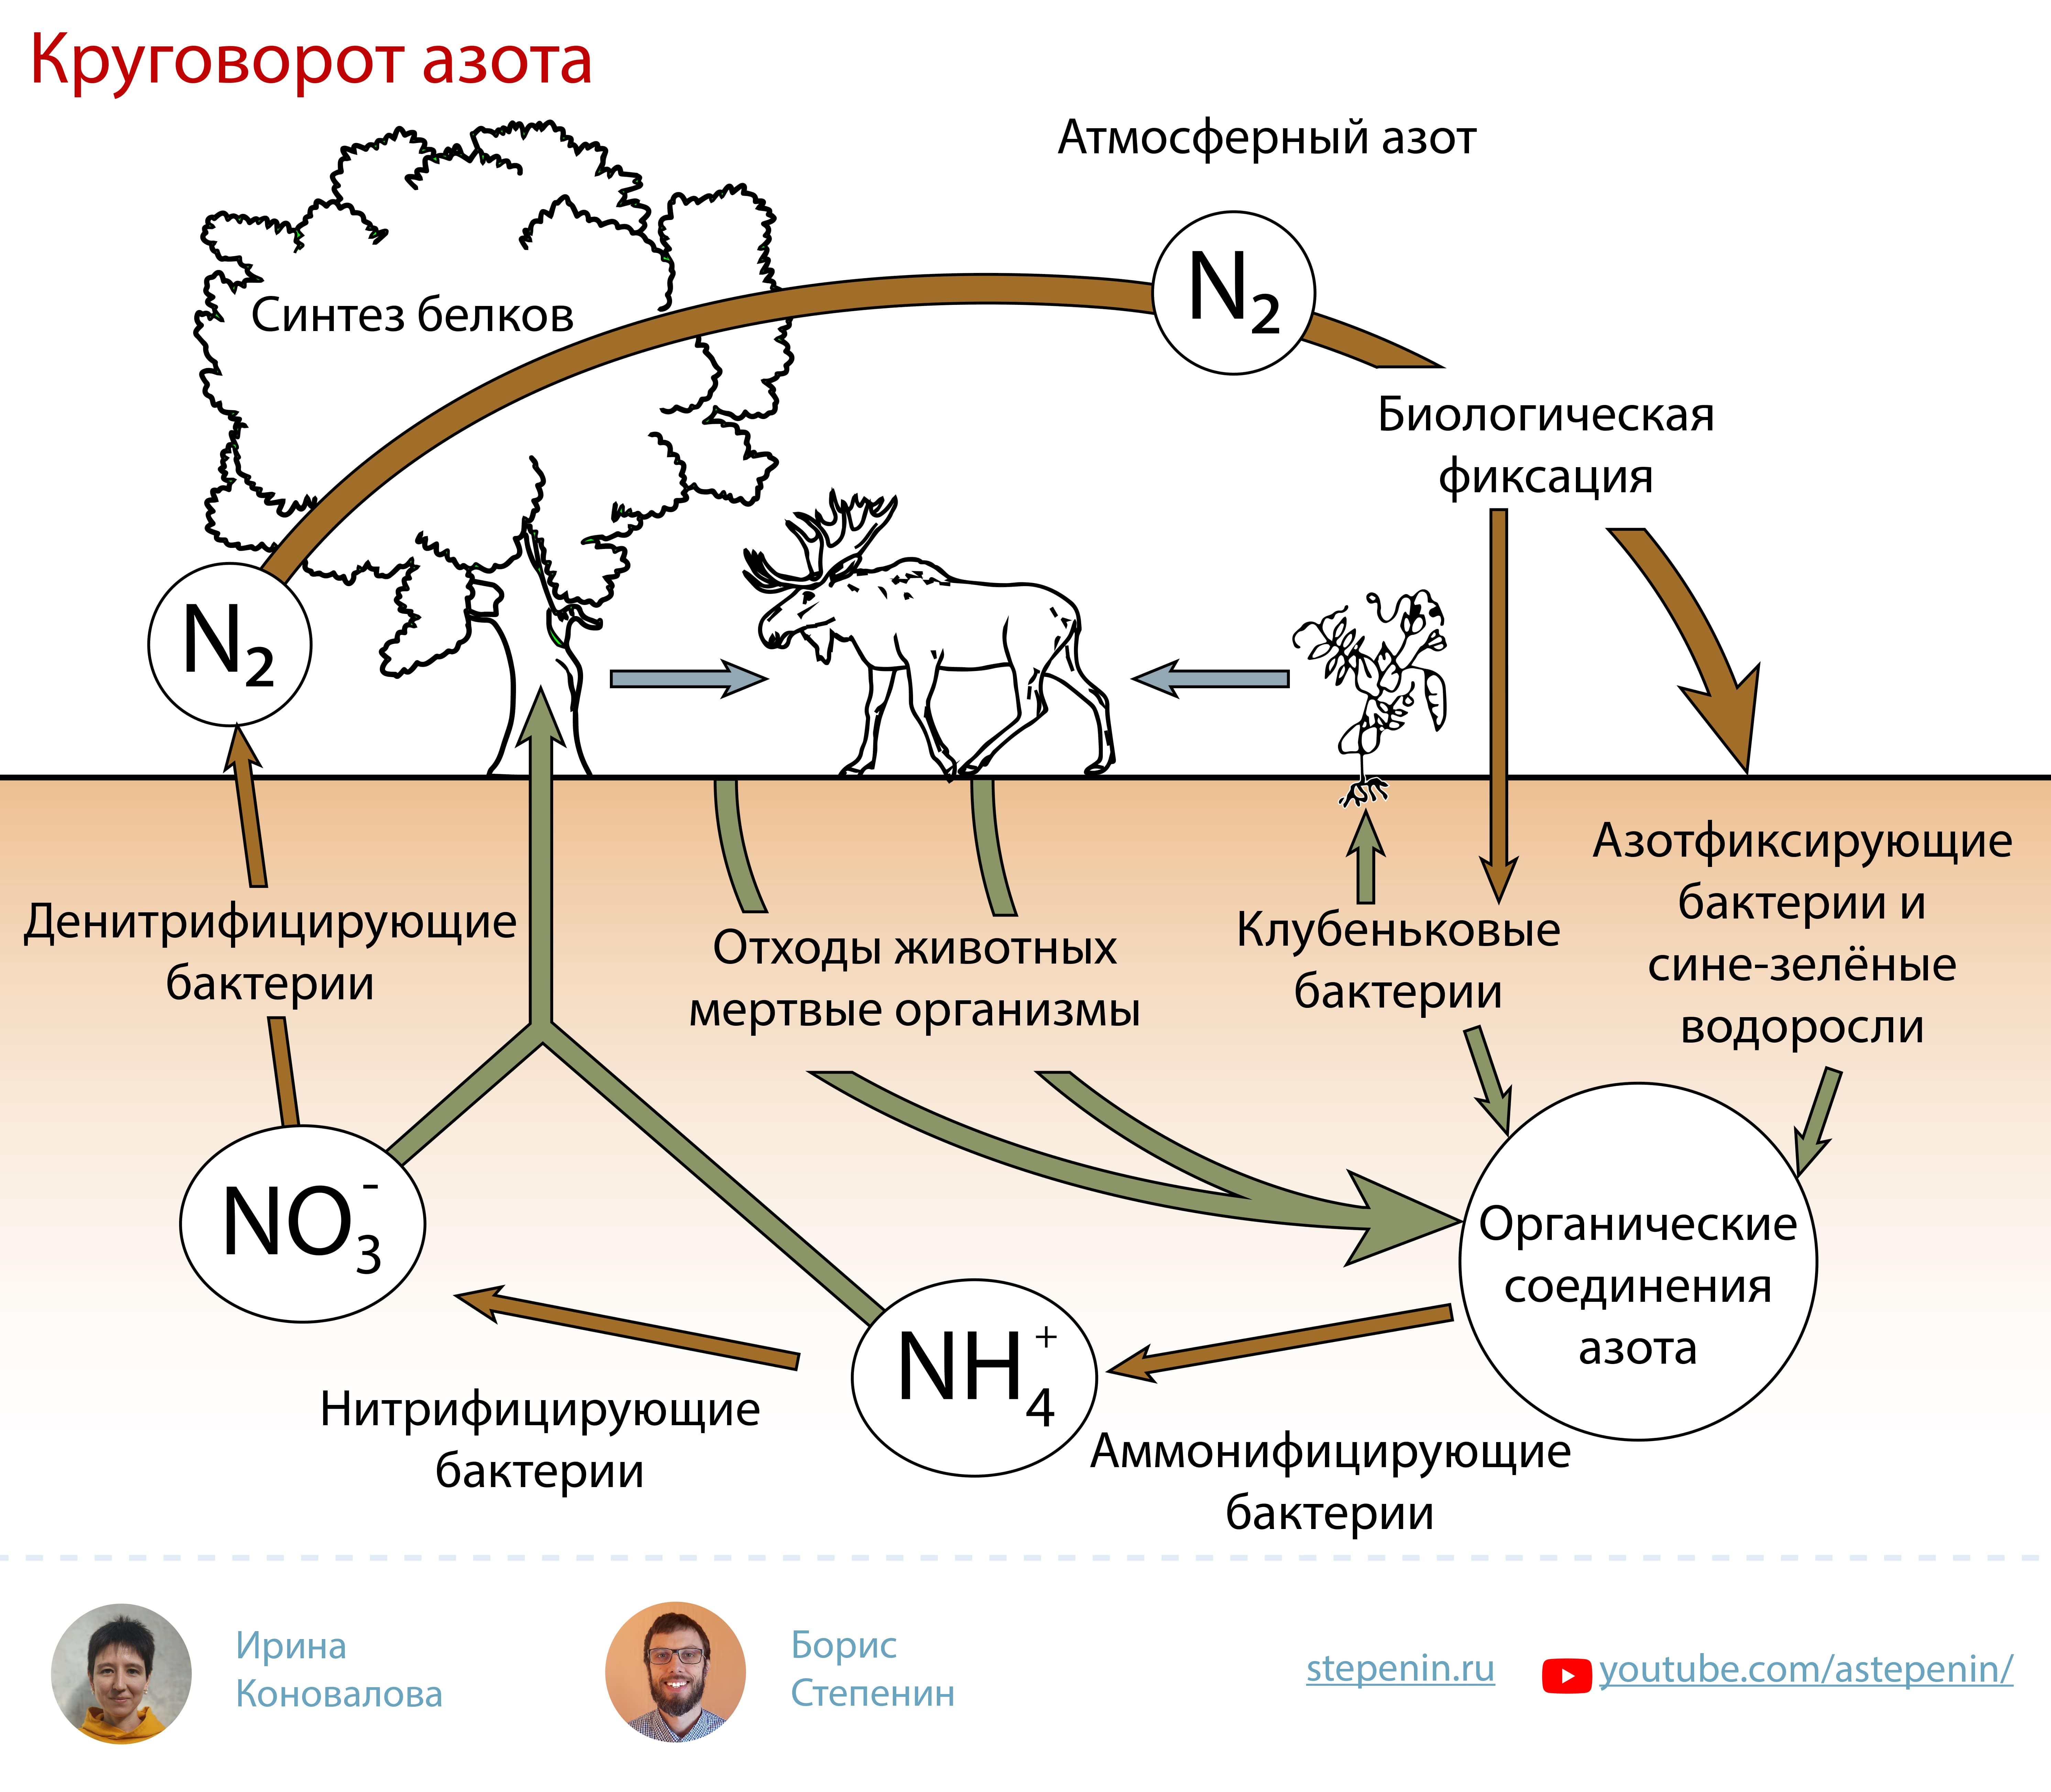 Продукт разложения живых организмов. Биогеохимический цикл азота схема. Биологическая роль азота круговорот. Атмосферный азот круговорот веществ. Круговороттазота в природе.